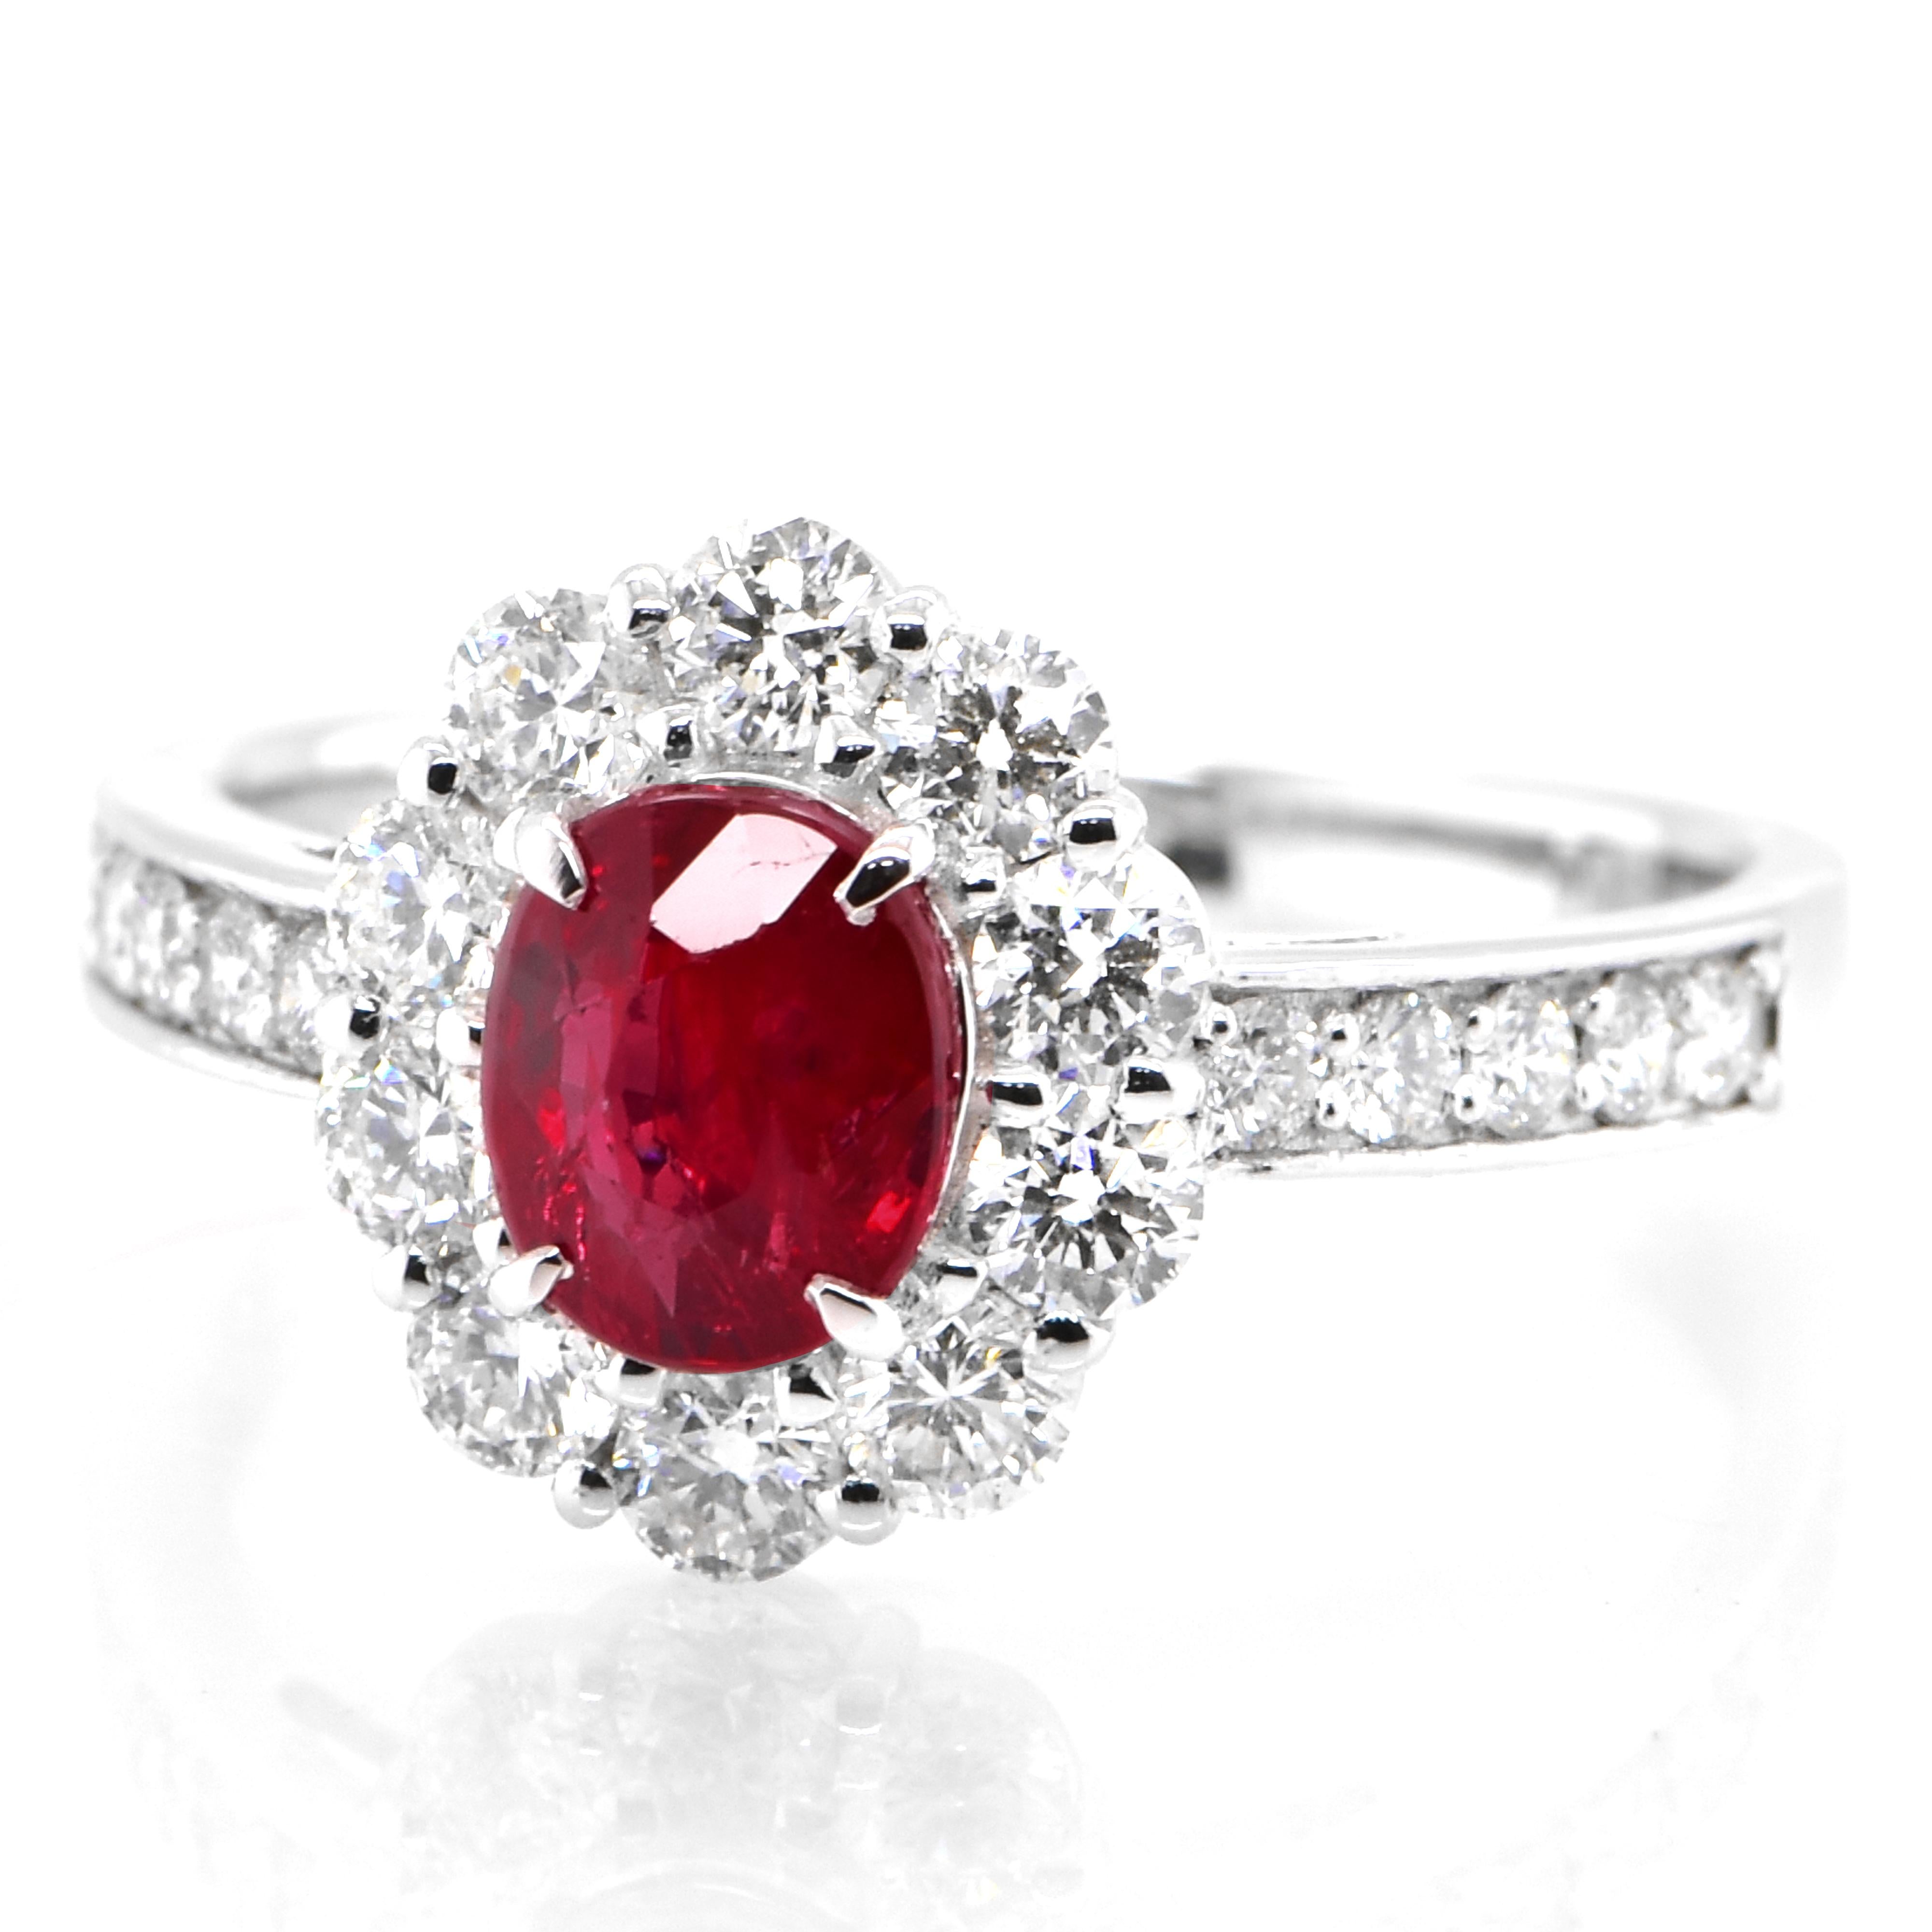 Ein wunderschöner Ring aus Platin mit einem GIA-zertifizierten, unbehandelten (unerhitzten) Rubin von 0,99 Karat und Diamanten von 0,77 Karat. Rubine werden im Sanskrit als 